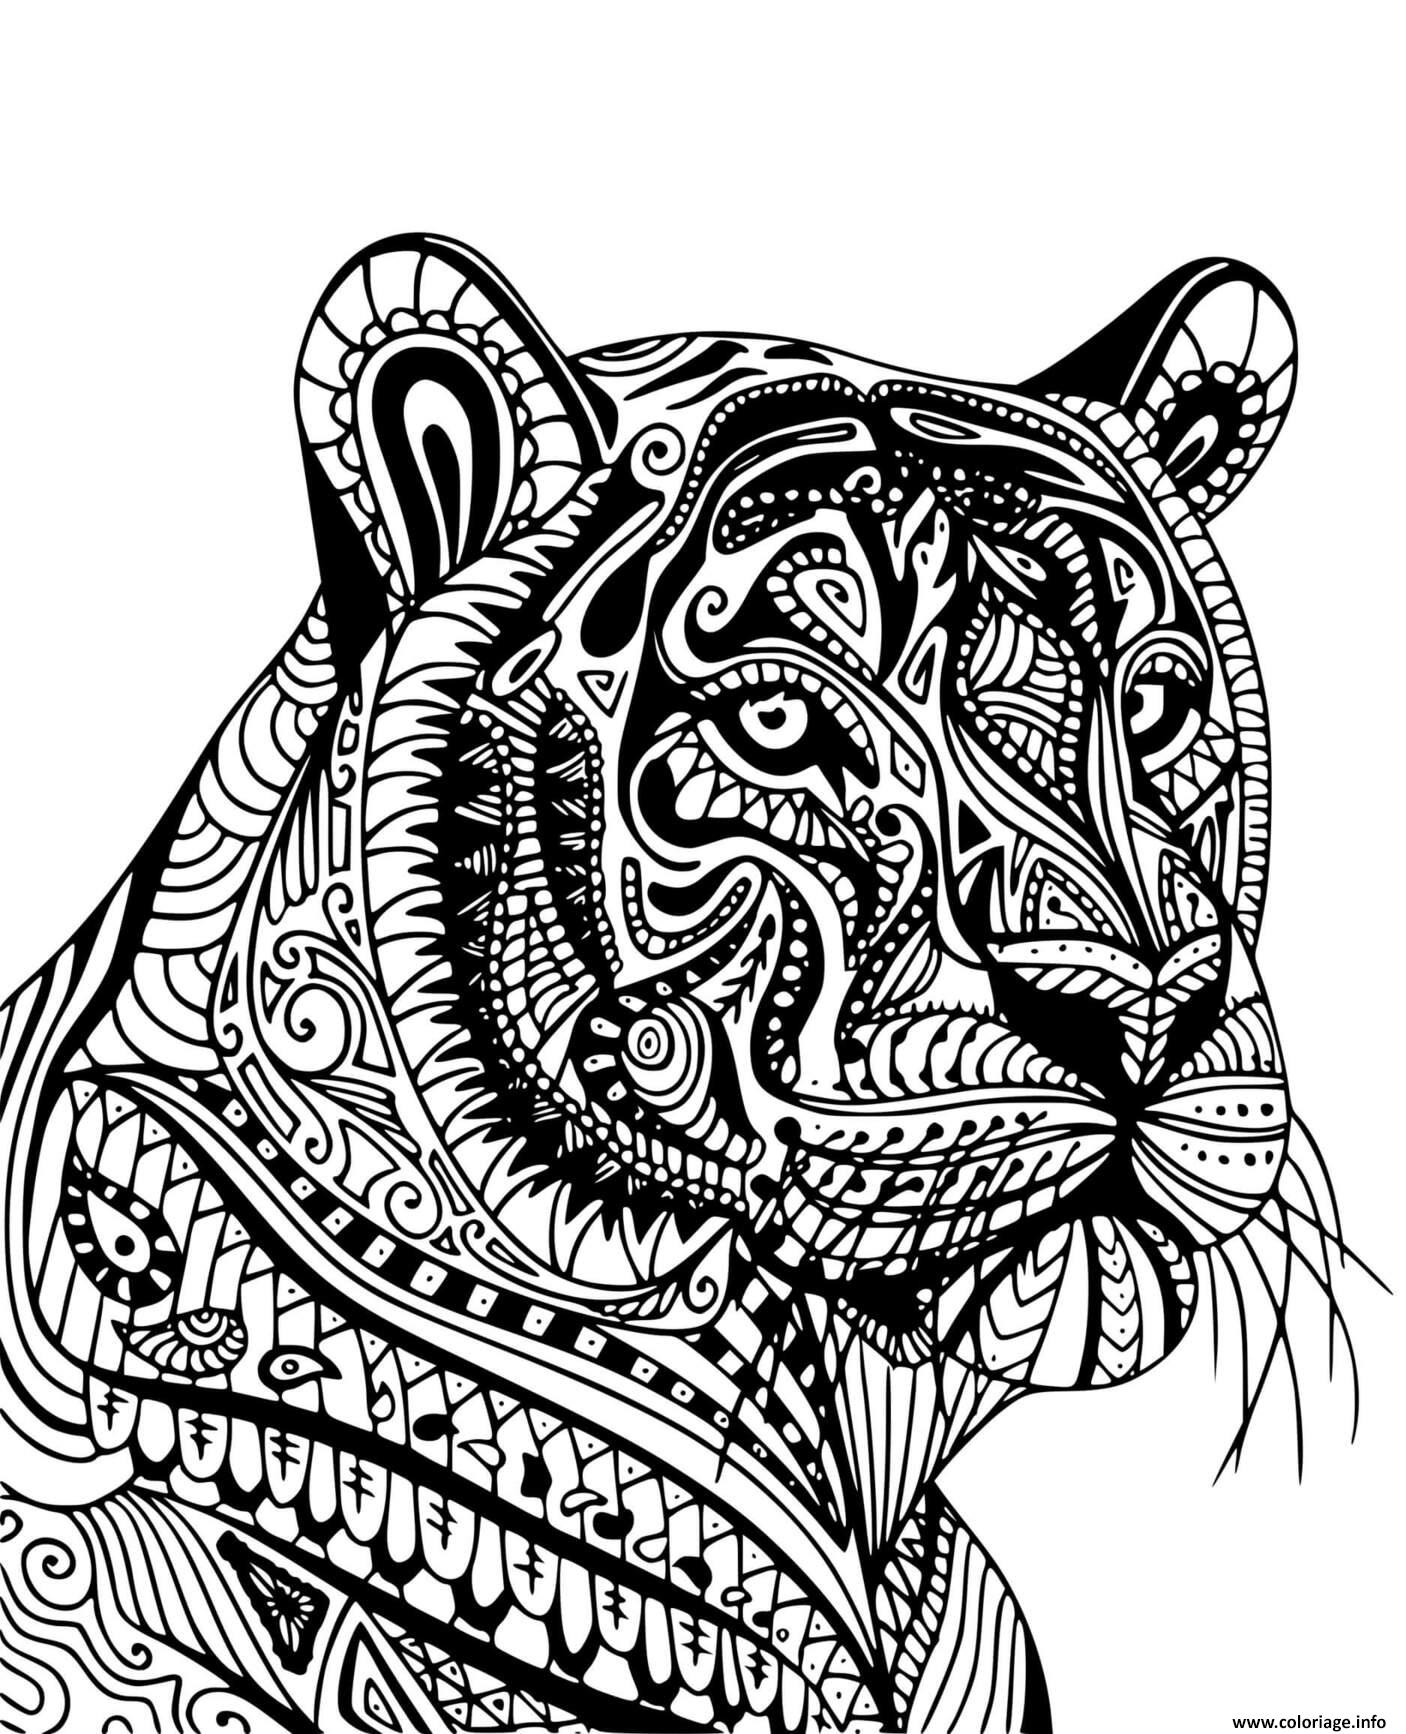 Coloriage Tigre Adulte Mandala De Profil - Jecolorie intérieur Dessin De Tigre A Colorier Et A Imprimer